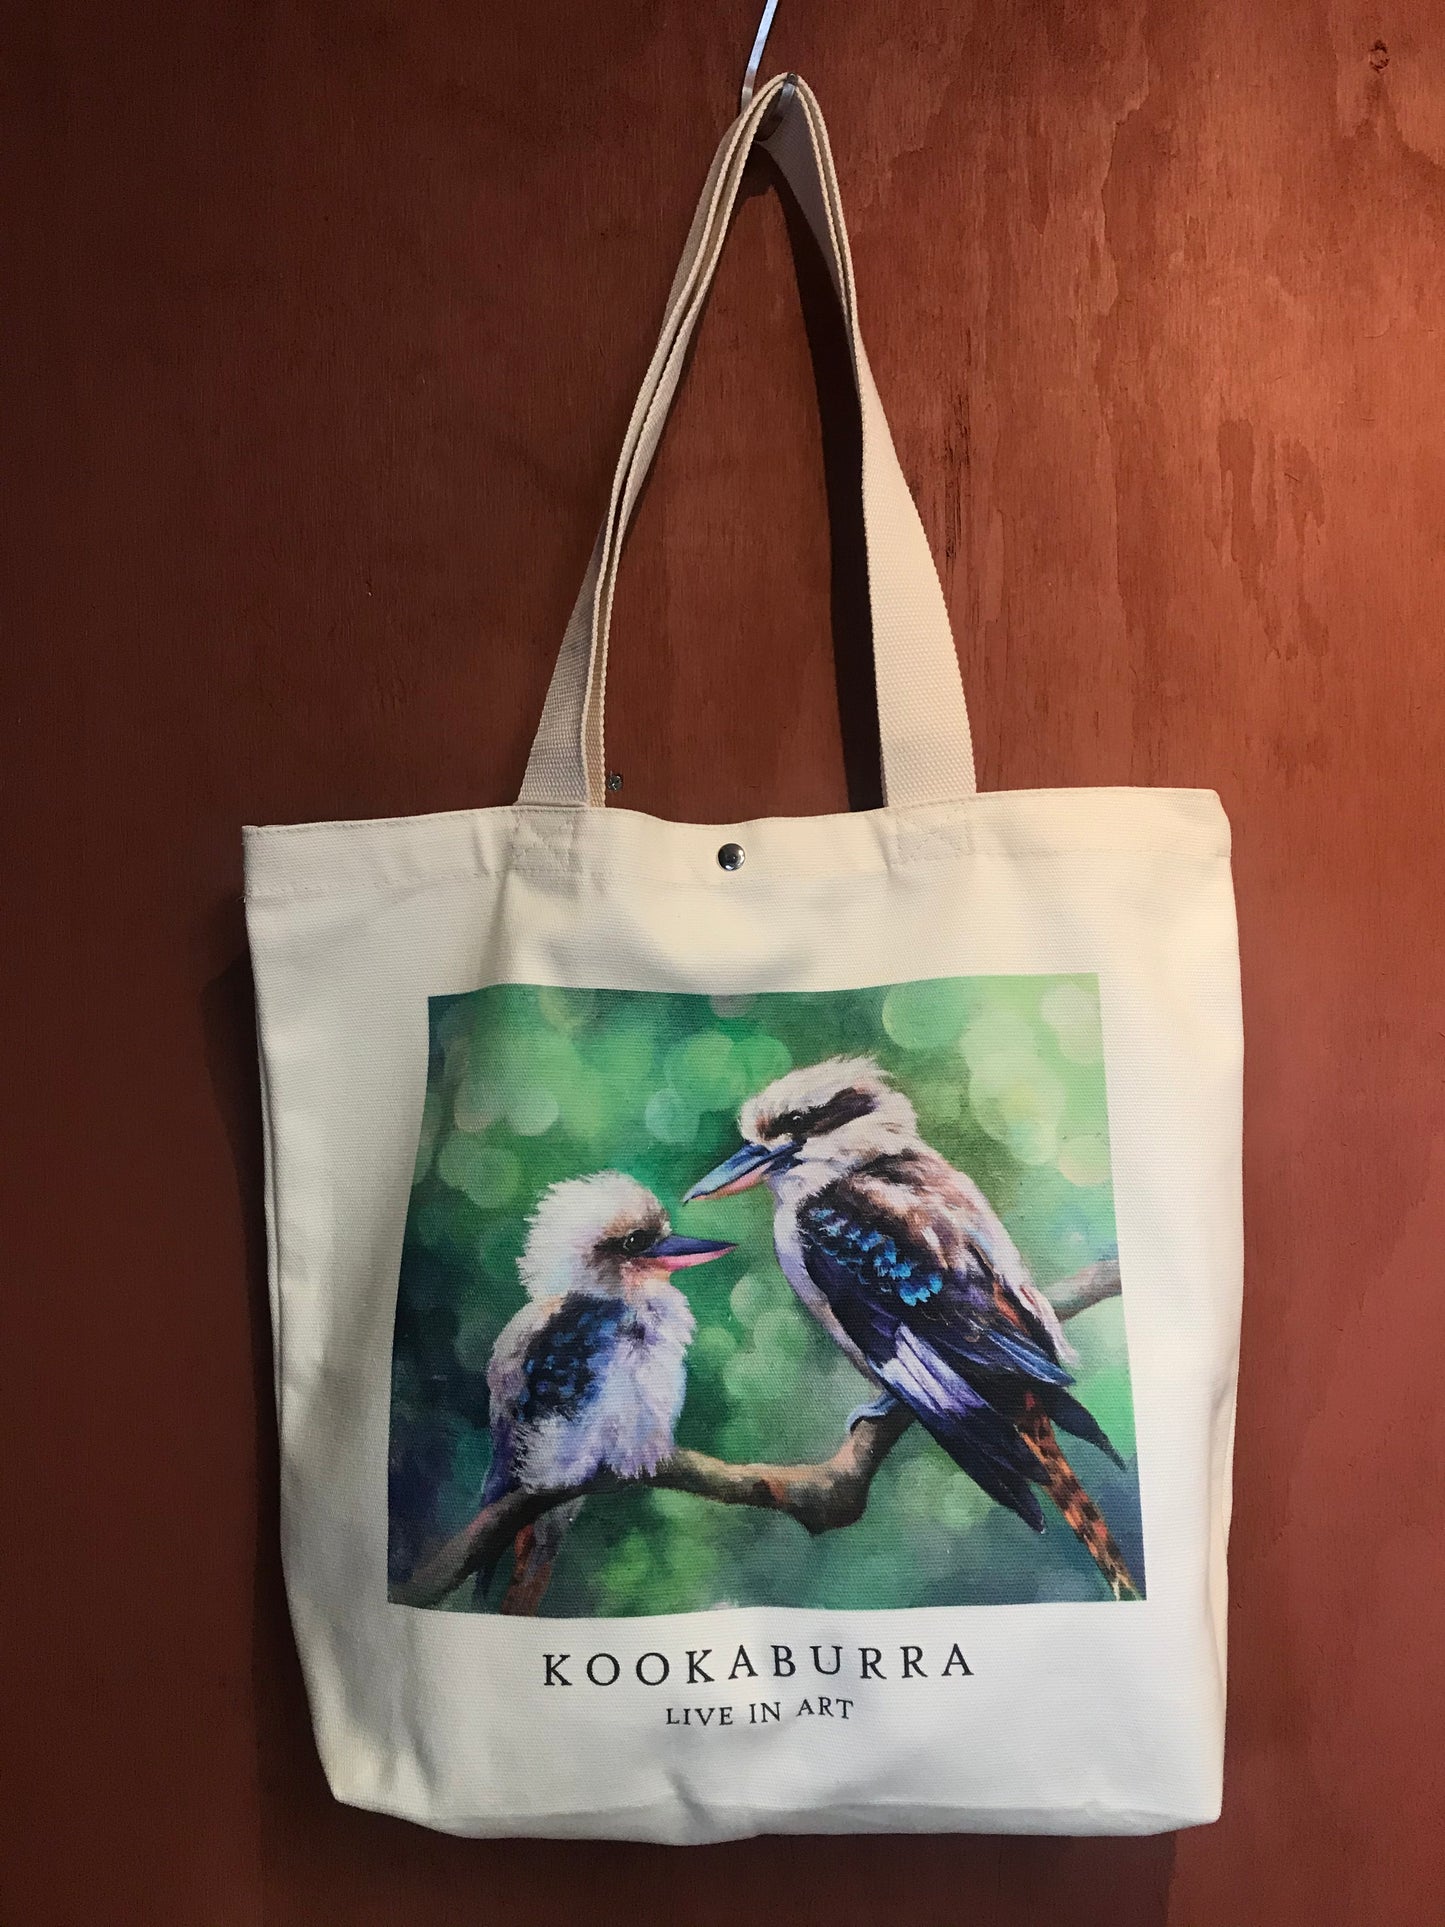 Kookaburra Tote Bag,Australian bird